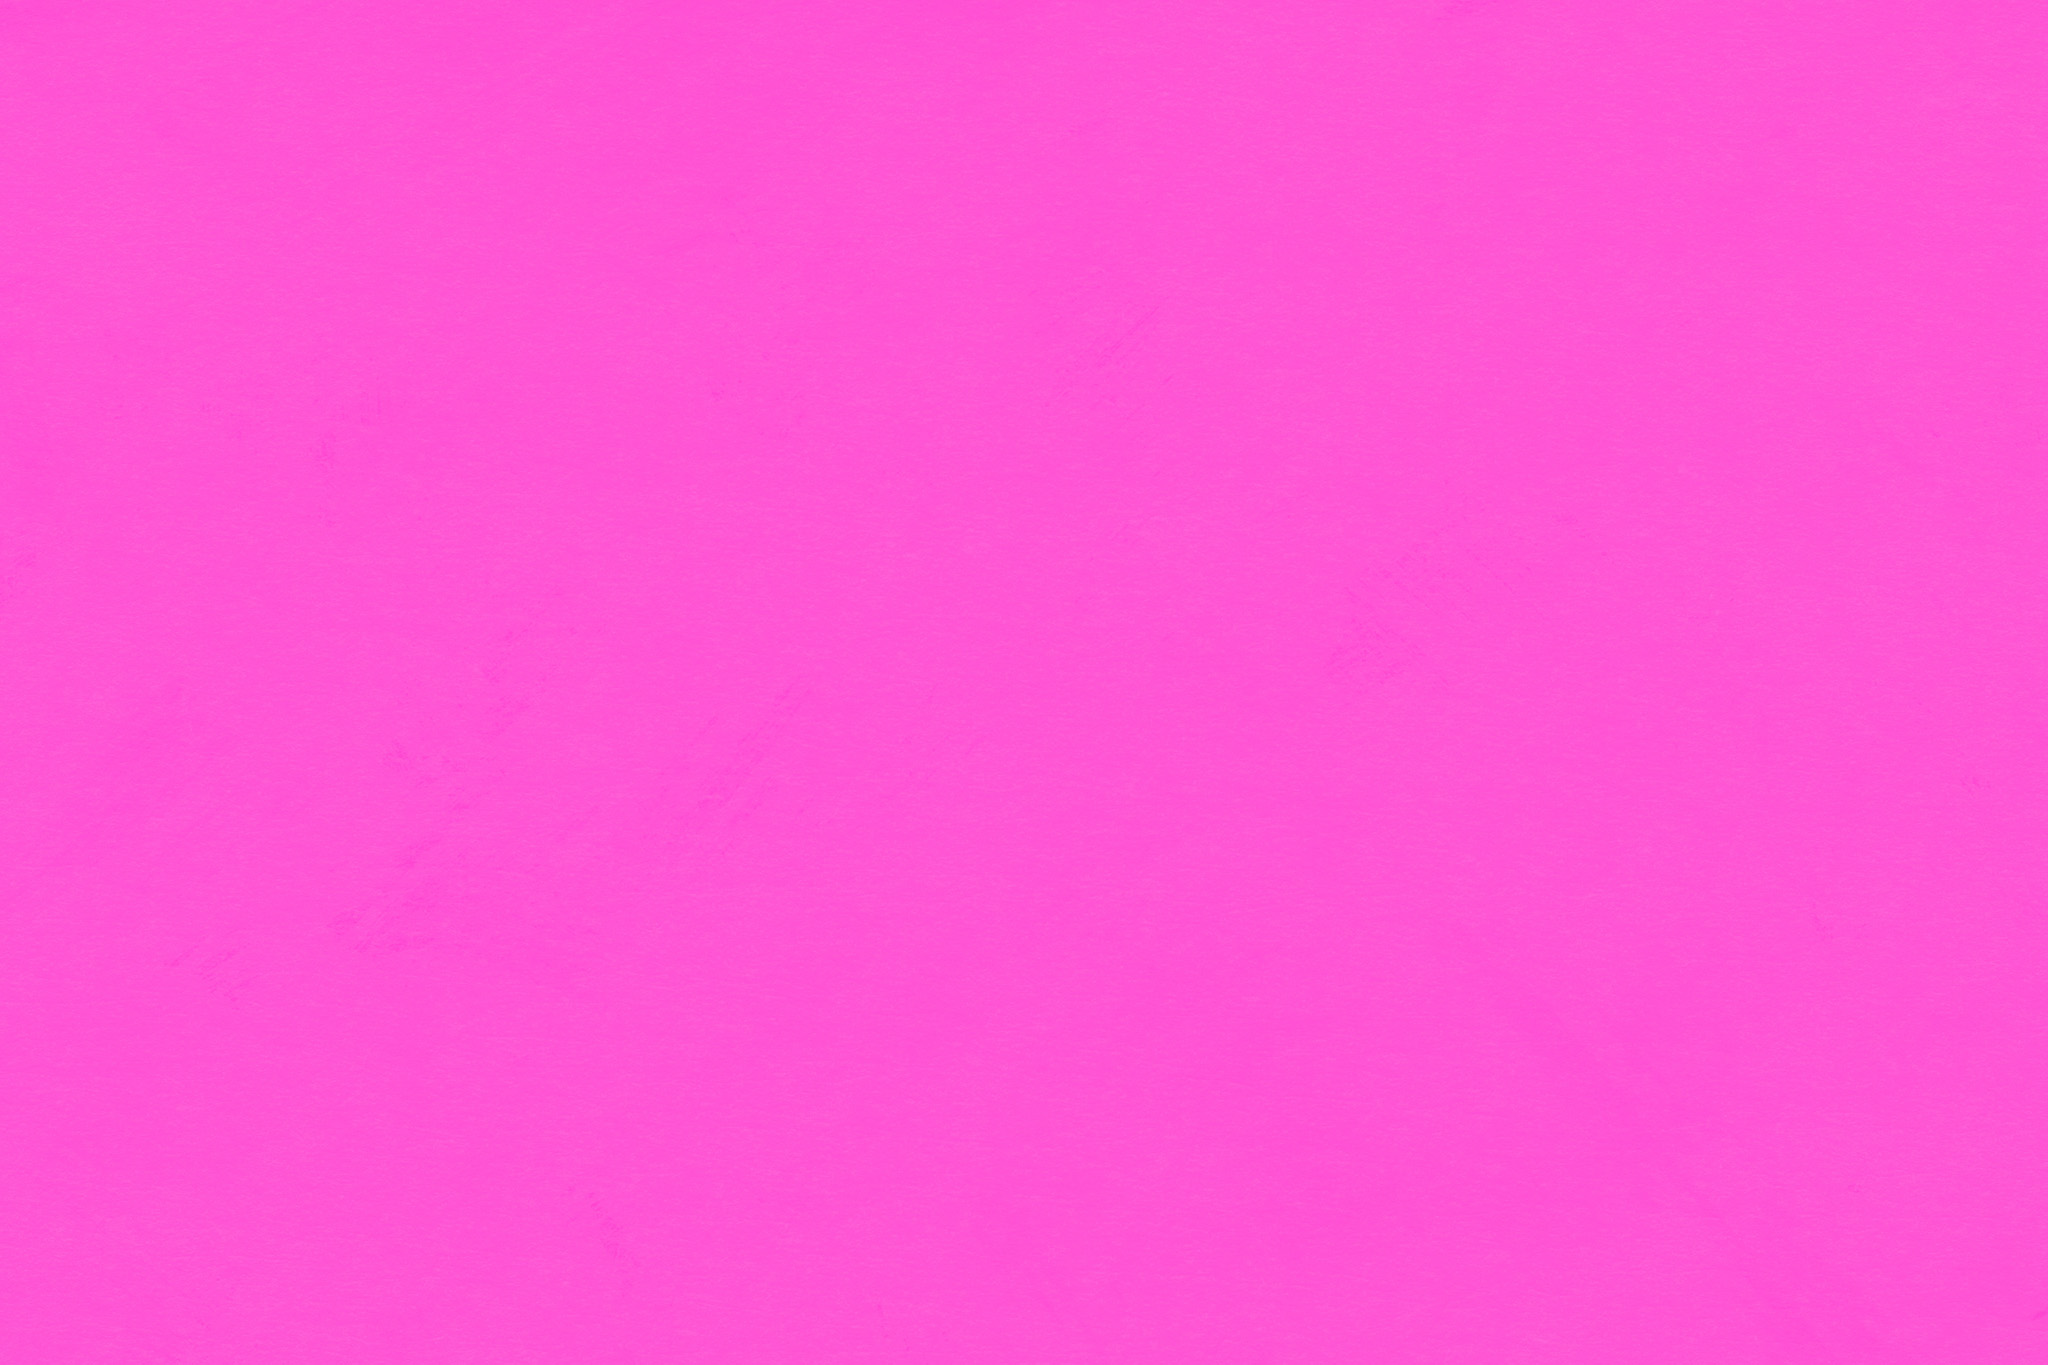 選択した画像 ピンク 無地 壁紙 Iphone 壁紙 無地 ピンク